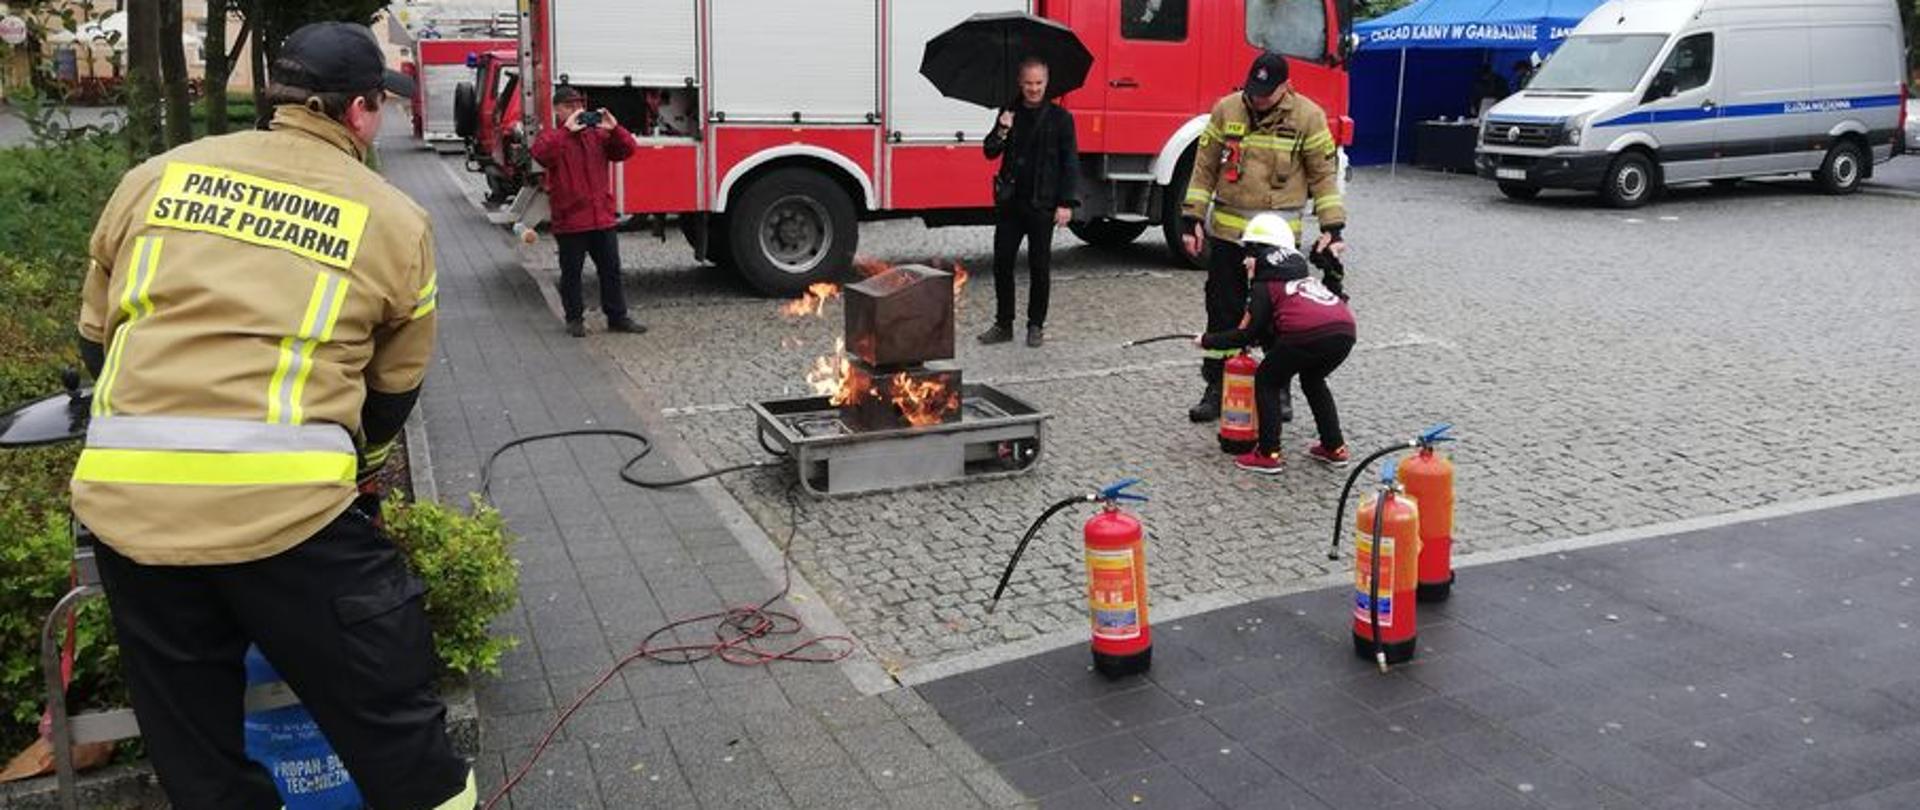 Na zdjęciu widać uczestników kampanii społecznej oraz strażaków przy stanowisku do symulacji pożaru komputera.